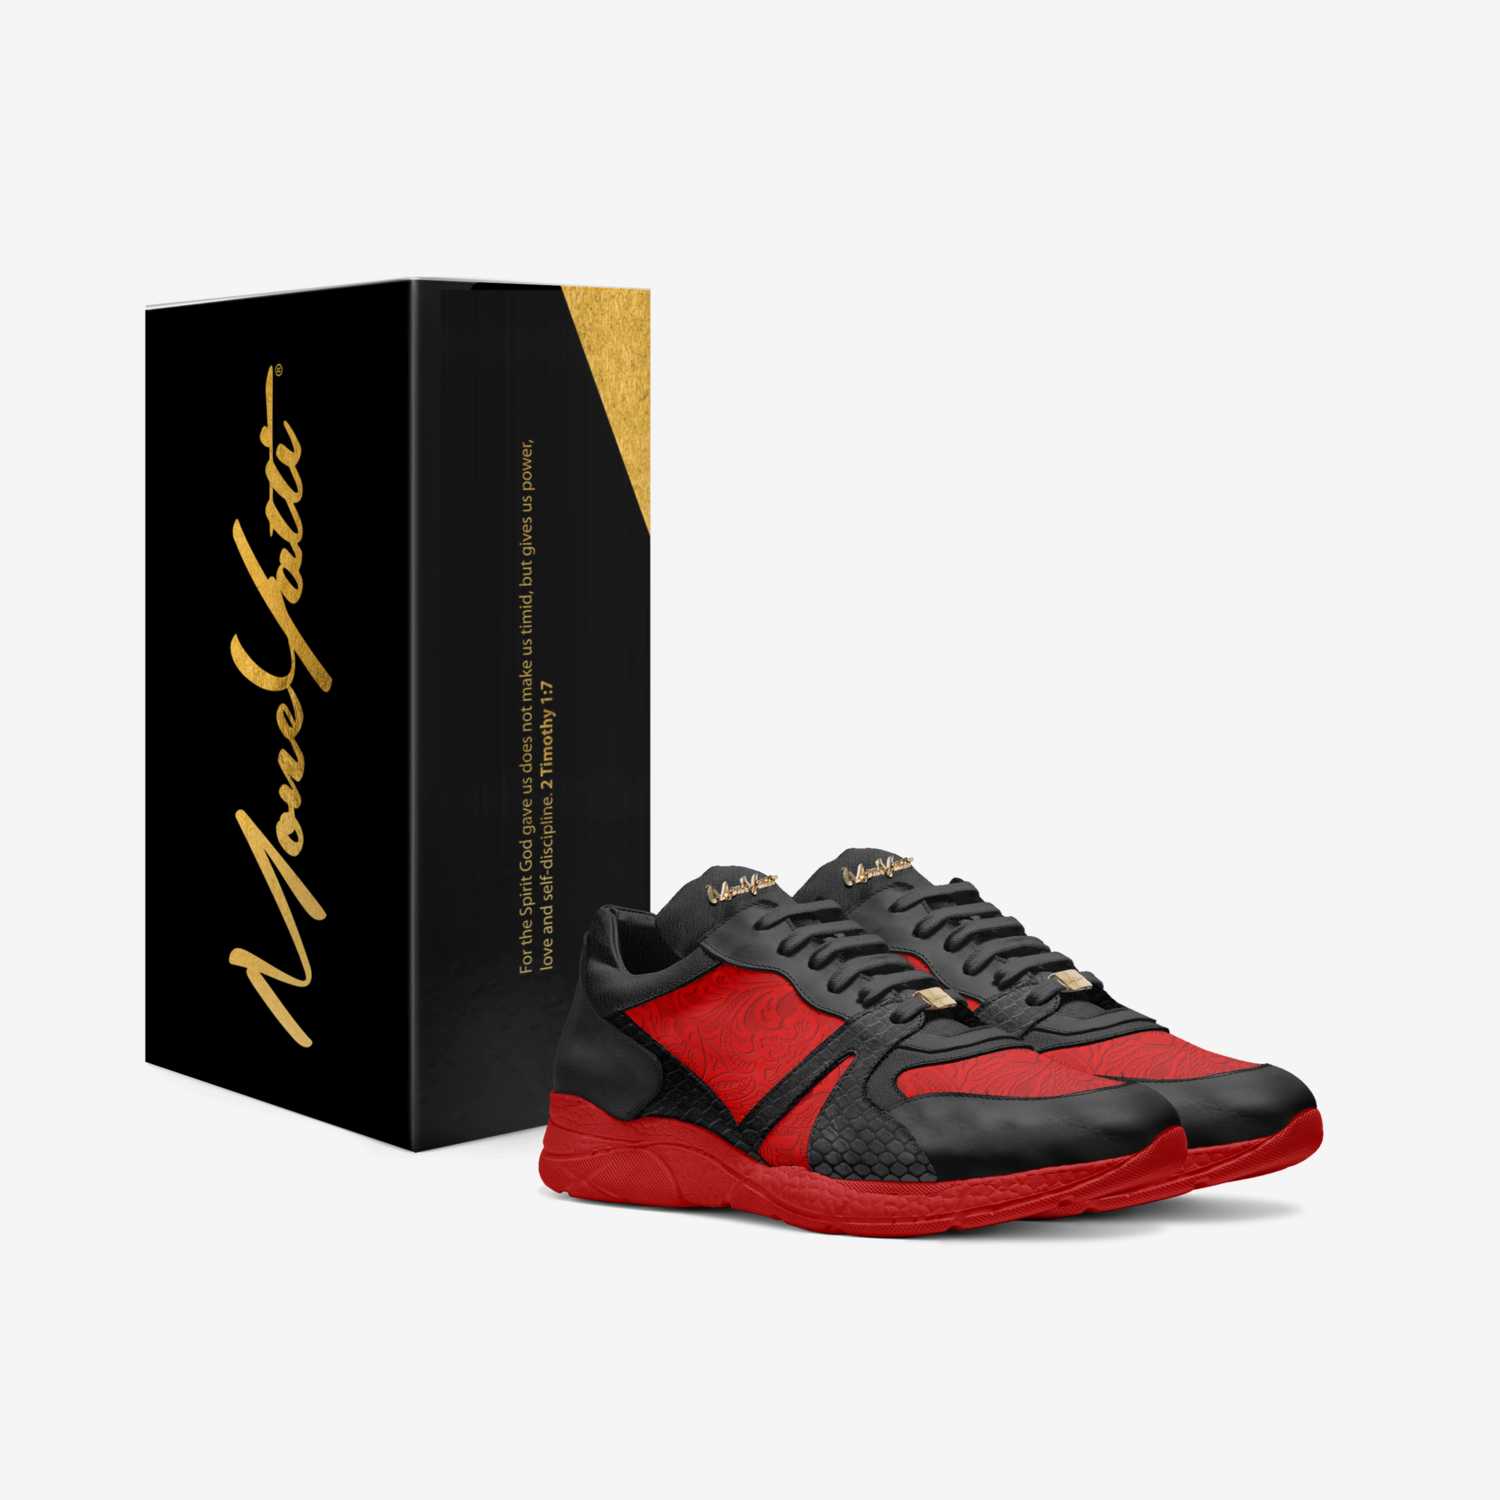 Moneyatti NEWS P05 custom made in Italy shoes by Moneyatti Brand | Box view